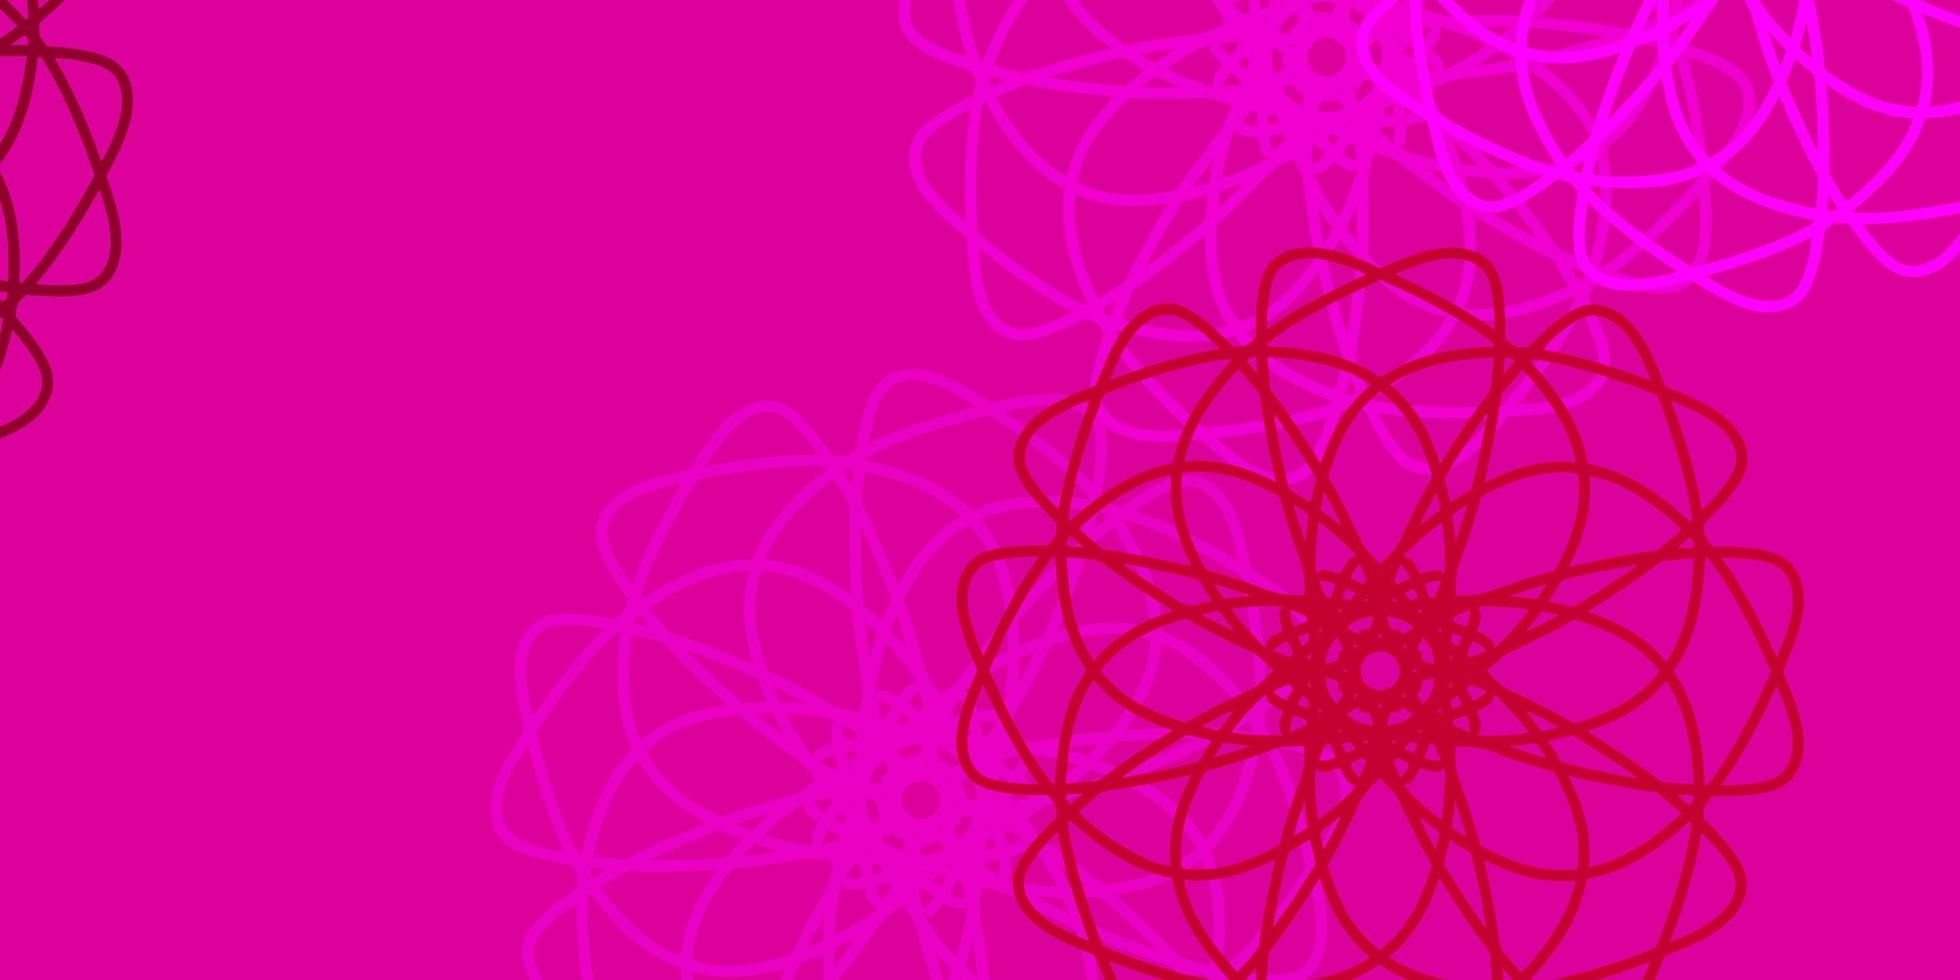 plantilla de doodle de vector rosa claro con flores.